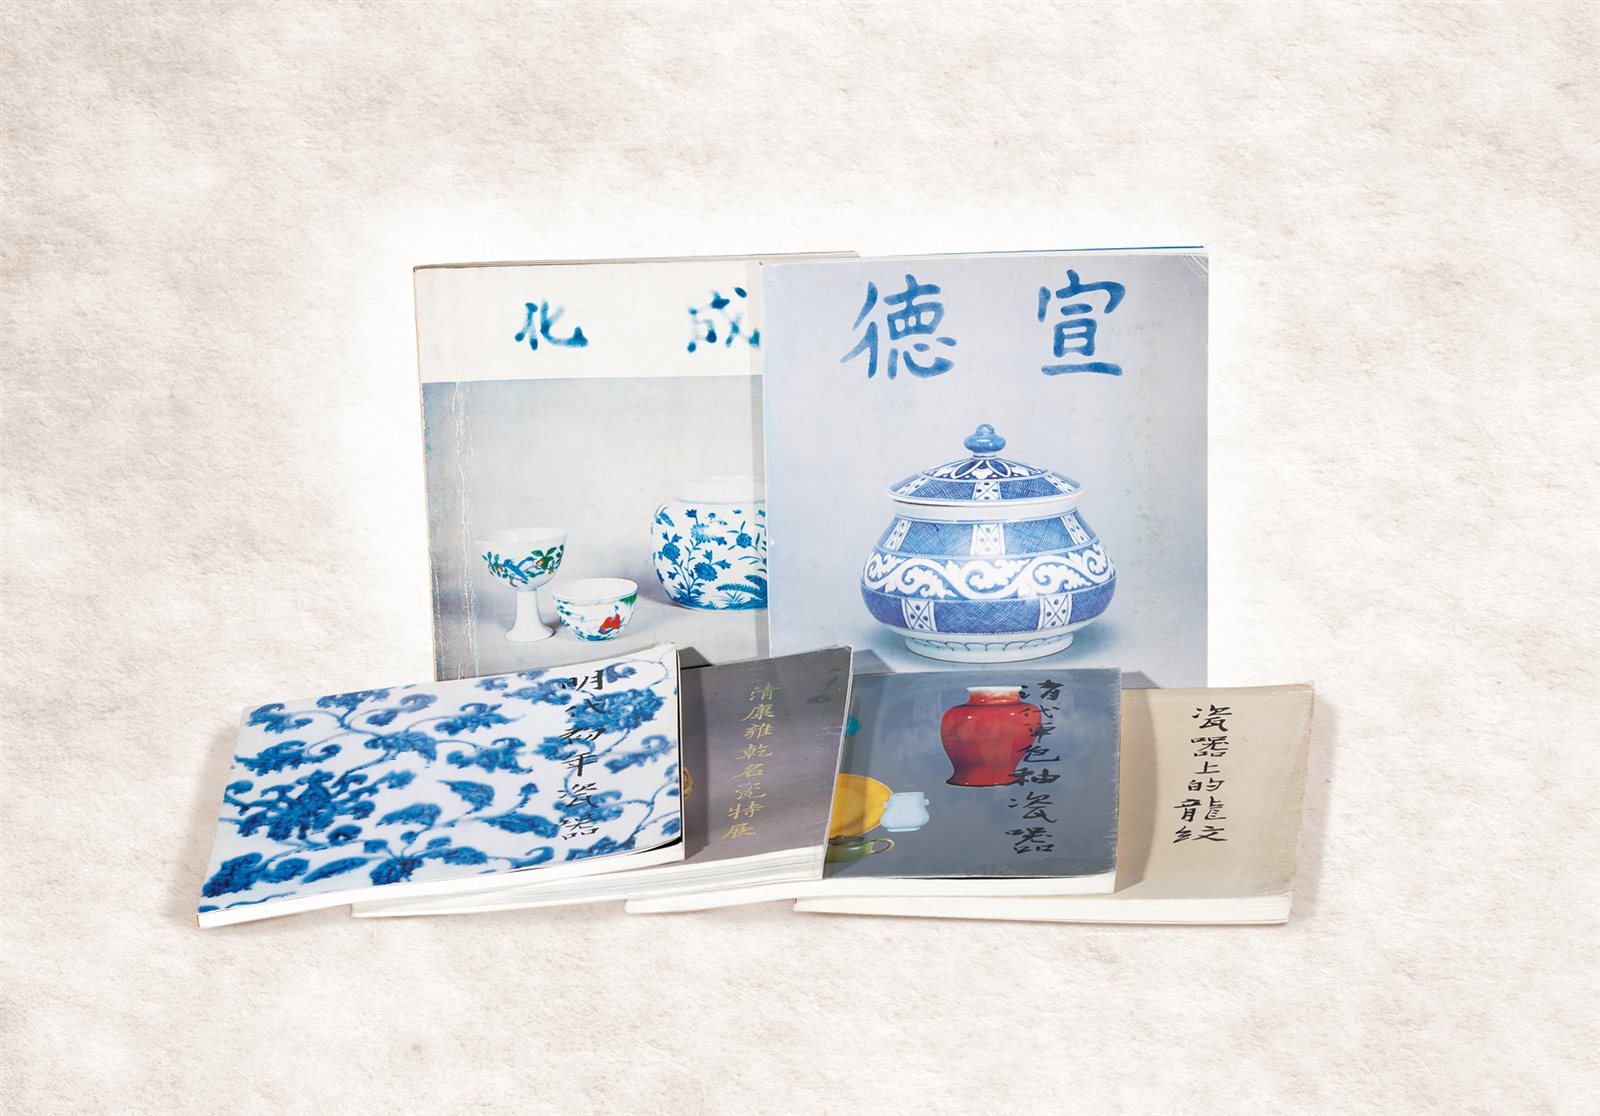 1976-1986年台北故宫博物院瓷器特展目录六册